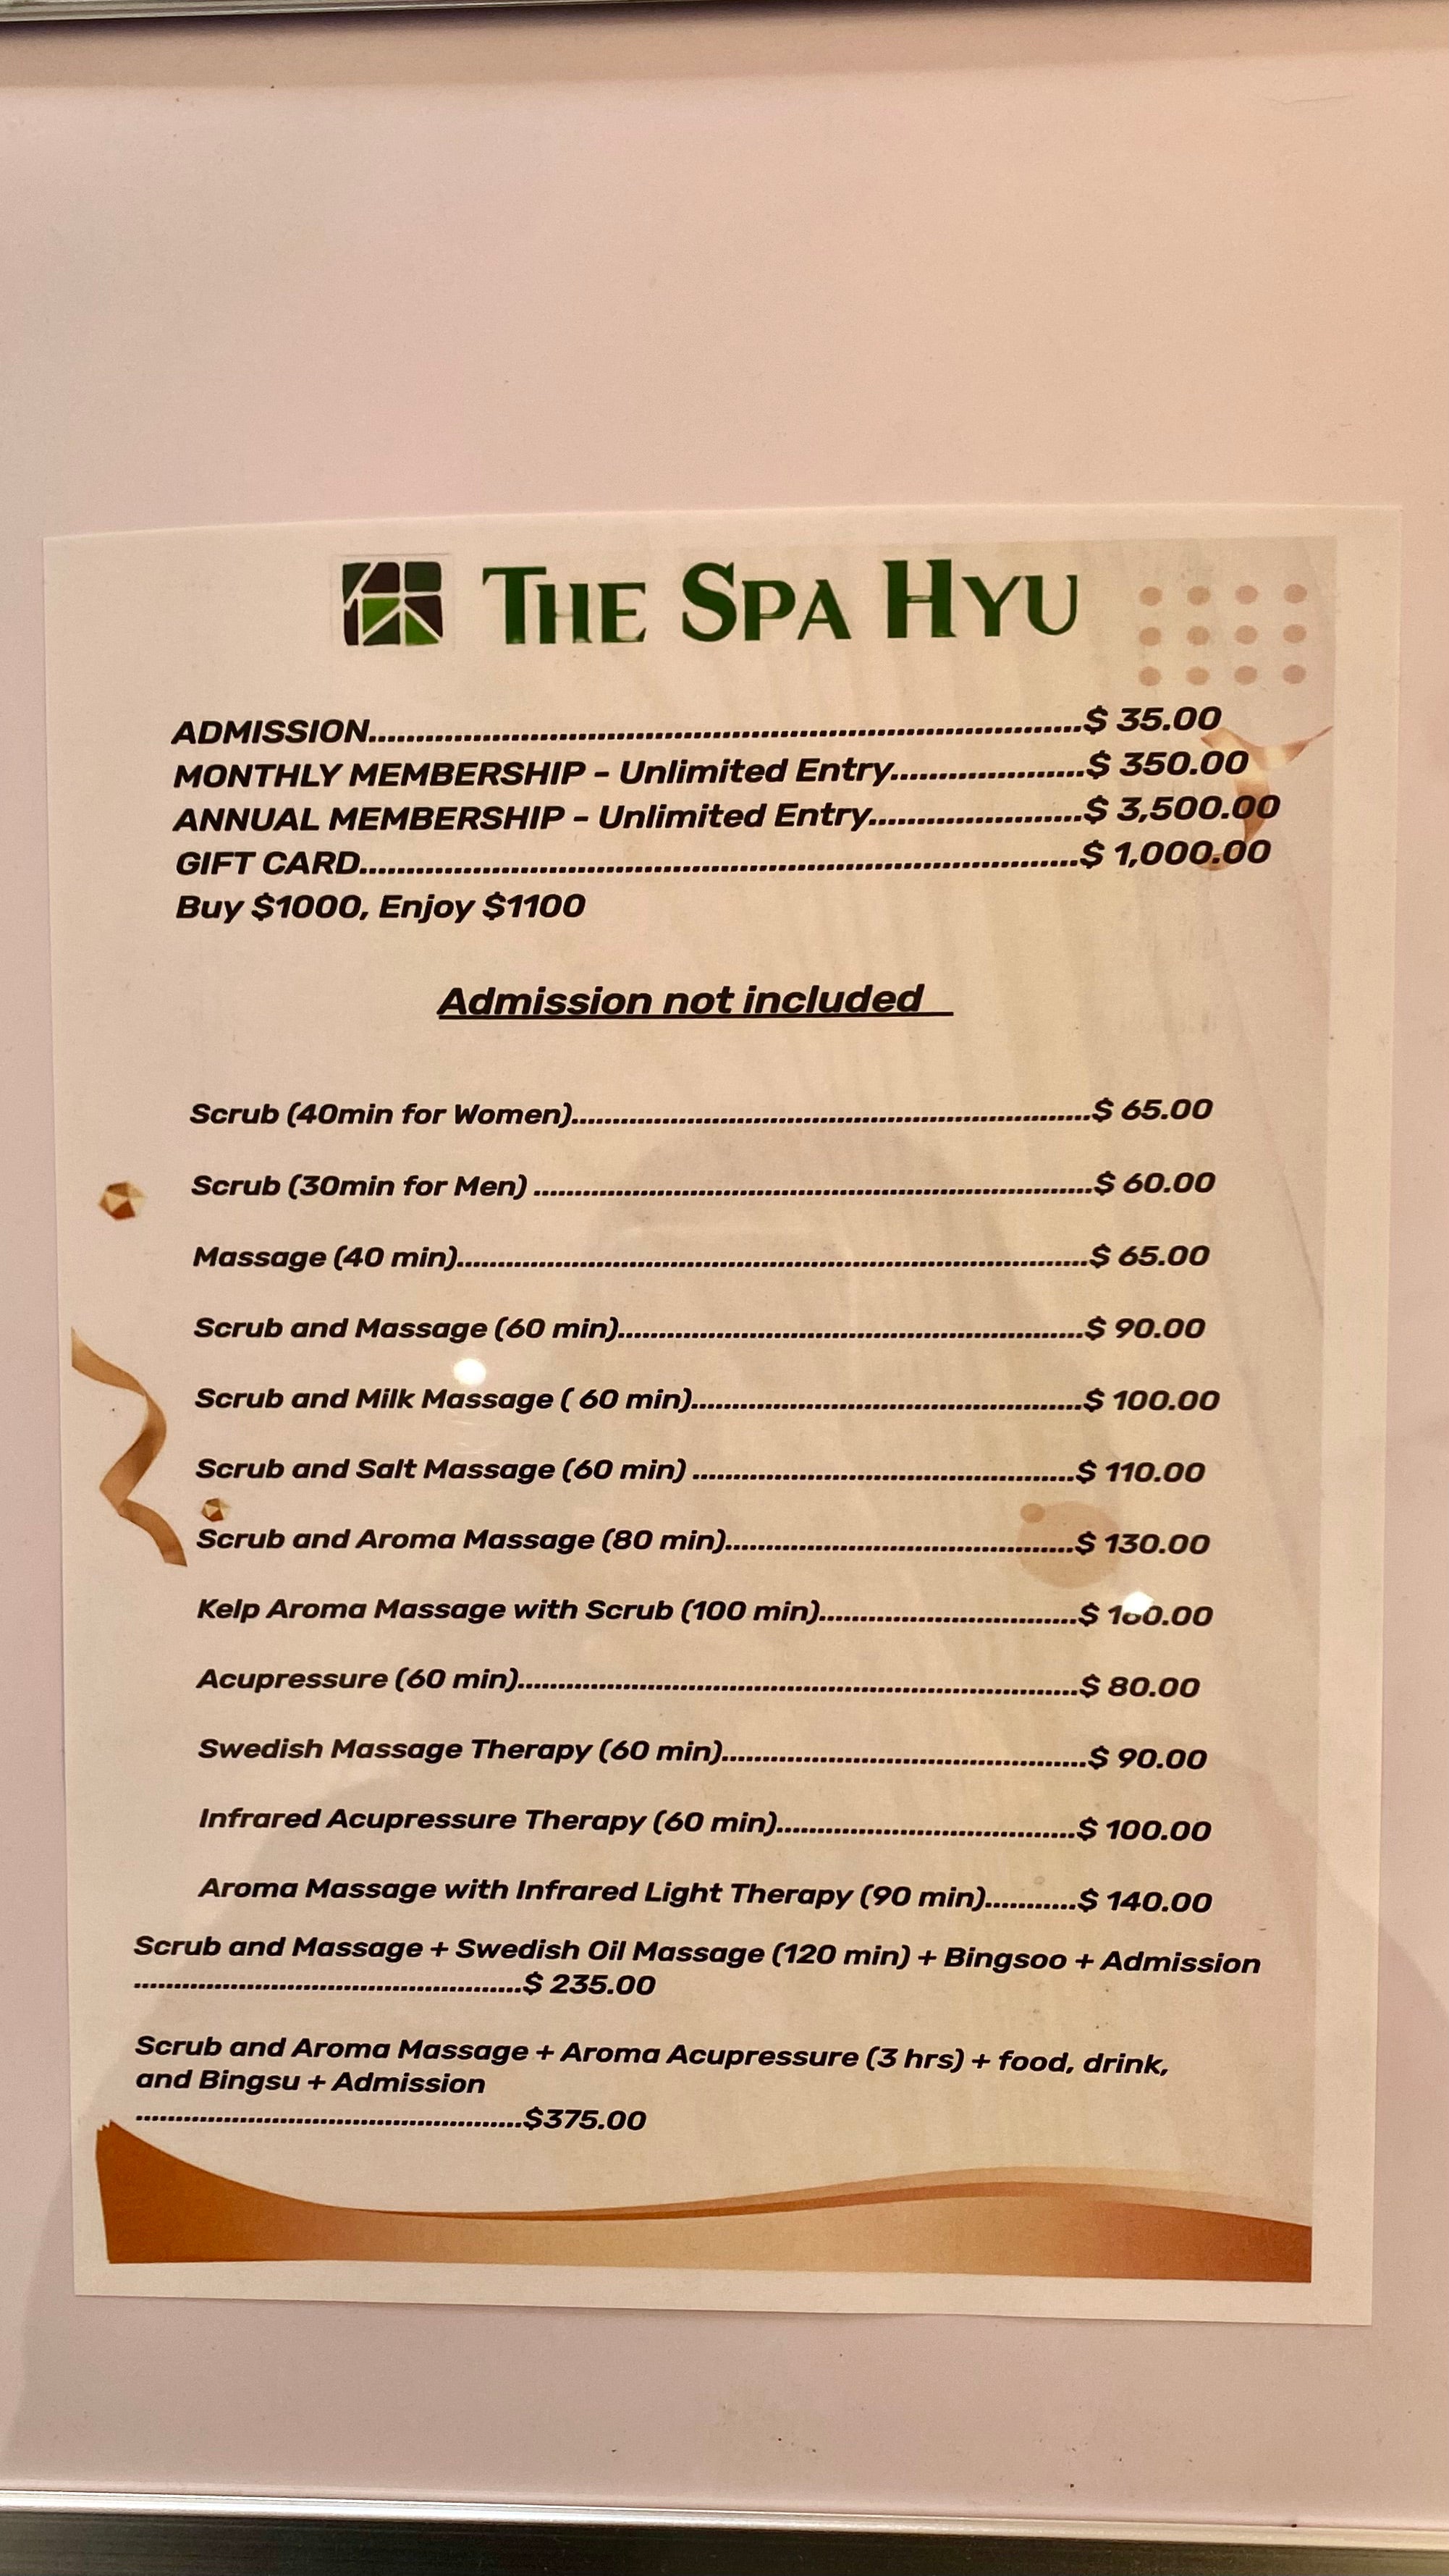 The Spa Hyu price